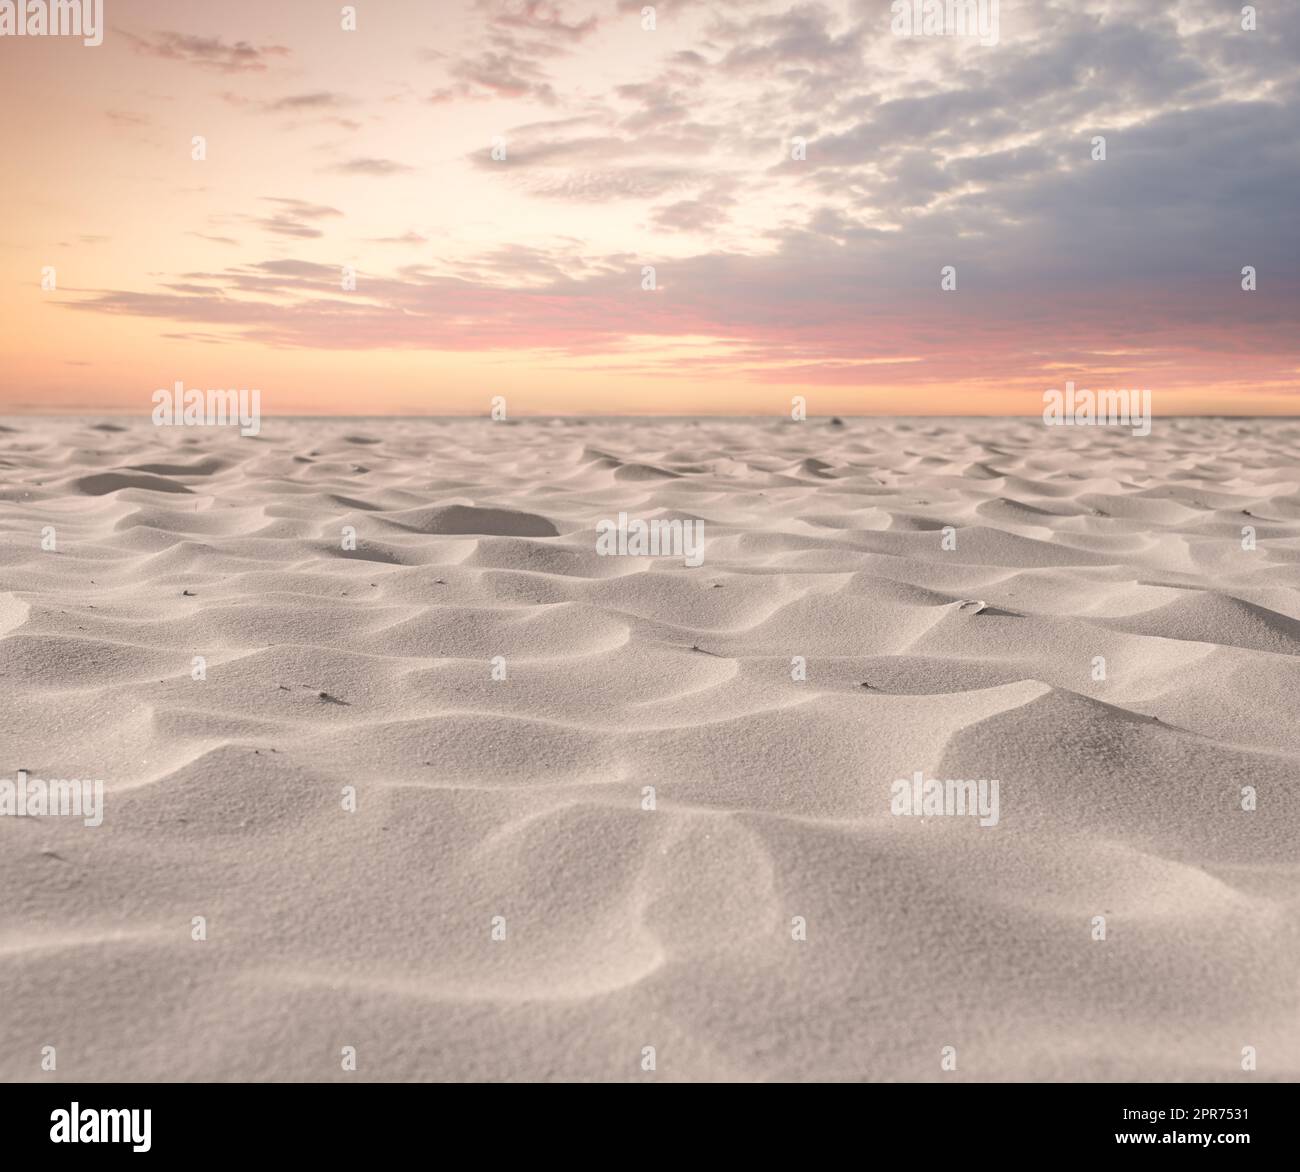 Plage dunes de sable dans la nature avec le ciel de crépuscule et le copyspace. Gros plan d'un paysage pittoresque en plein air avec une texture granuleuse. Désert calme à explorer pour le voyage et le tourisme Banque D'Images